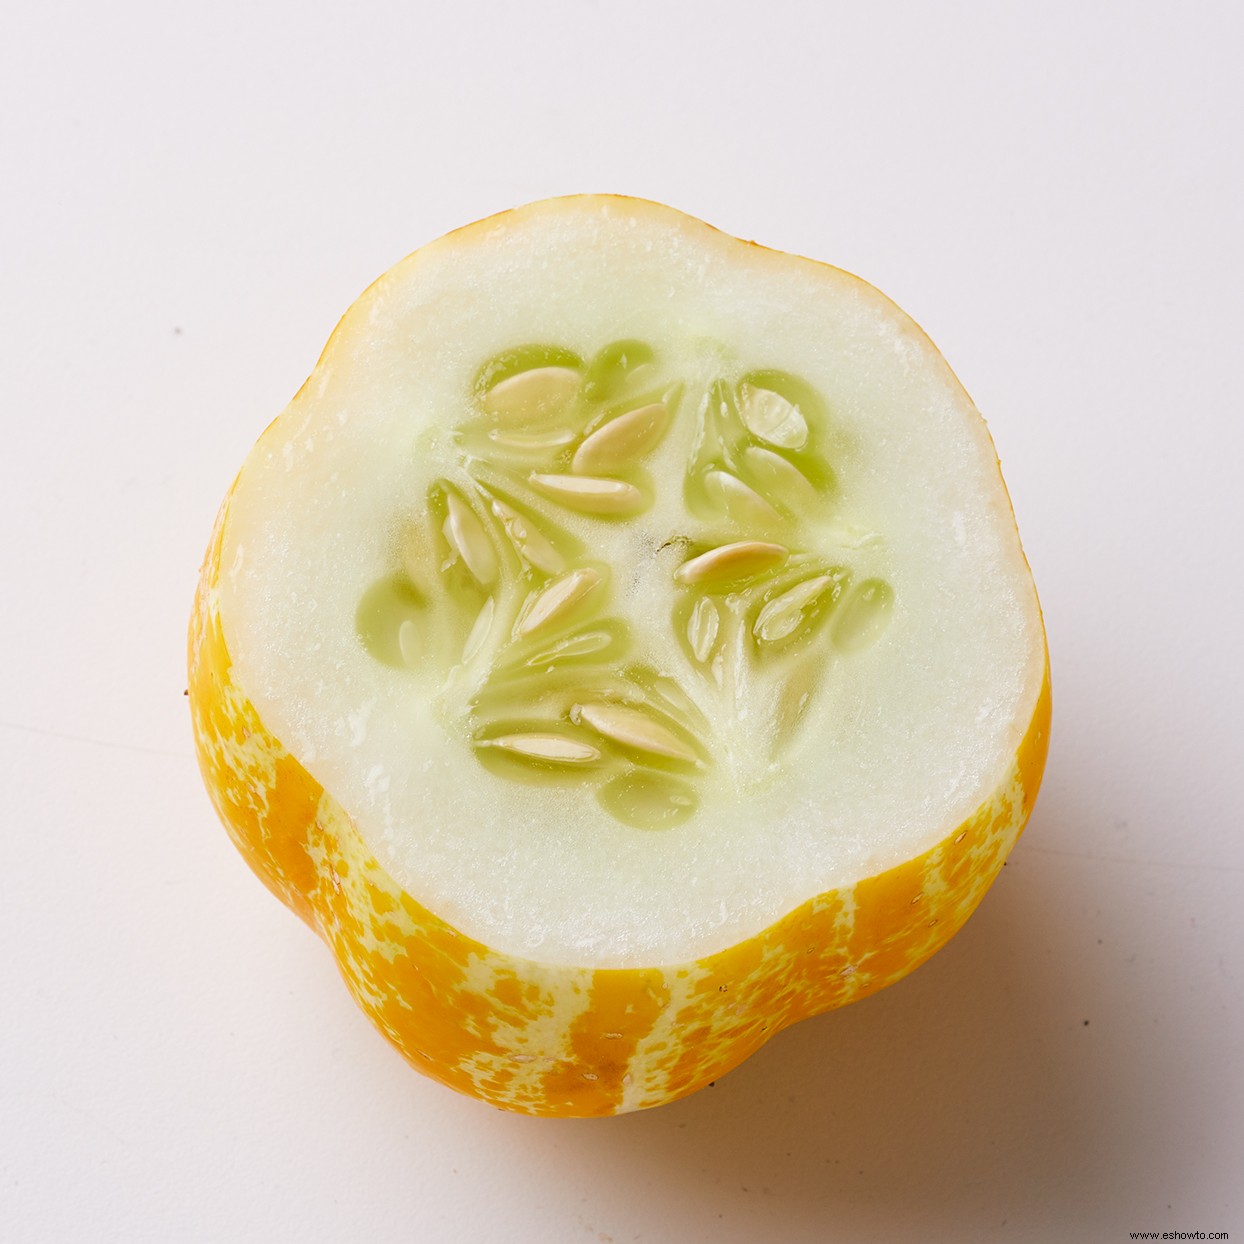 Cultive pepinos de limón para darle un toque fresco a una verdura clásica 